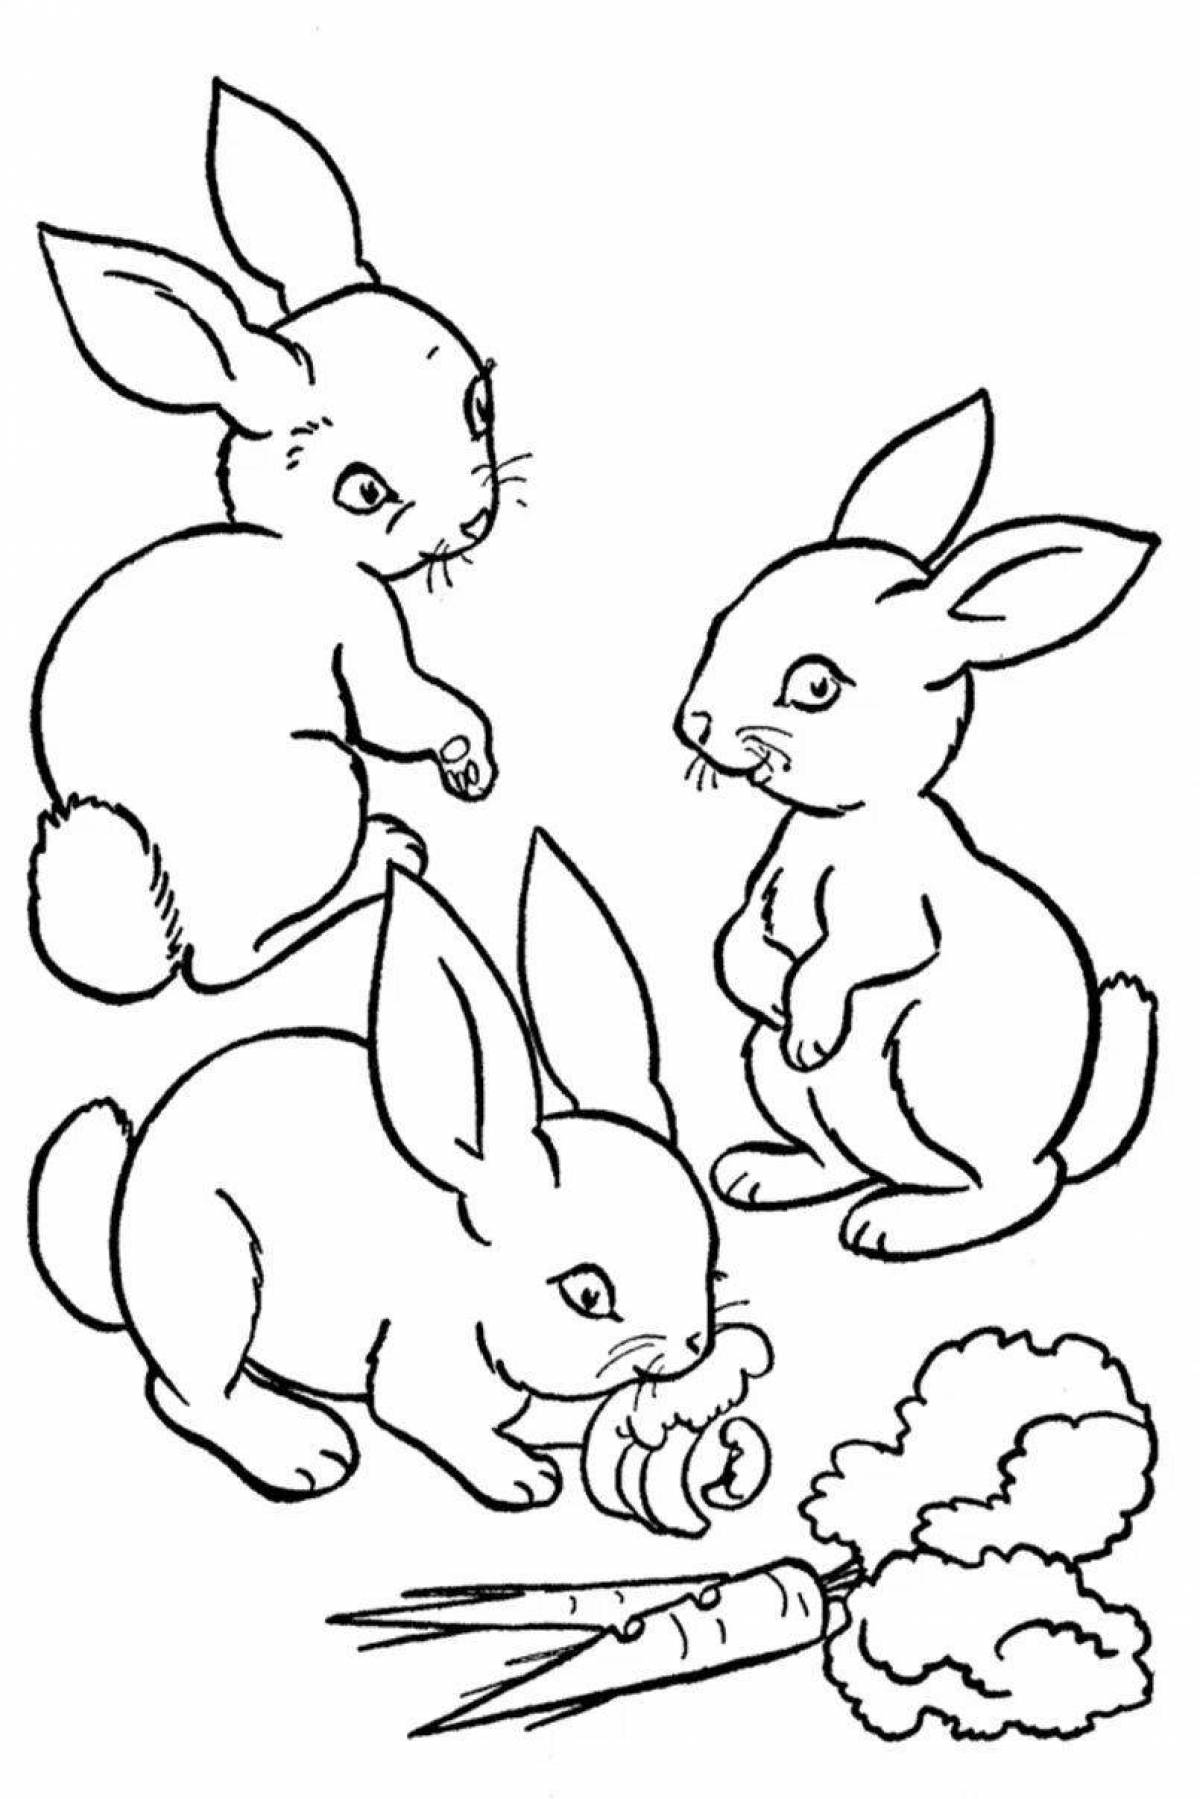 Возбужденный кролик-раскраска для детей